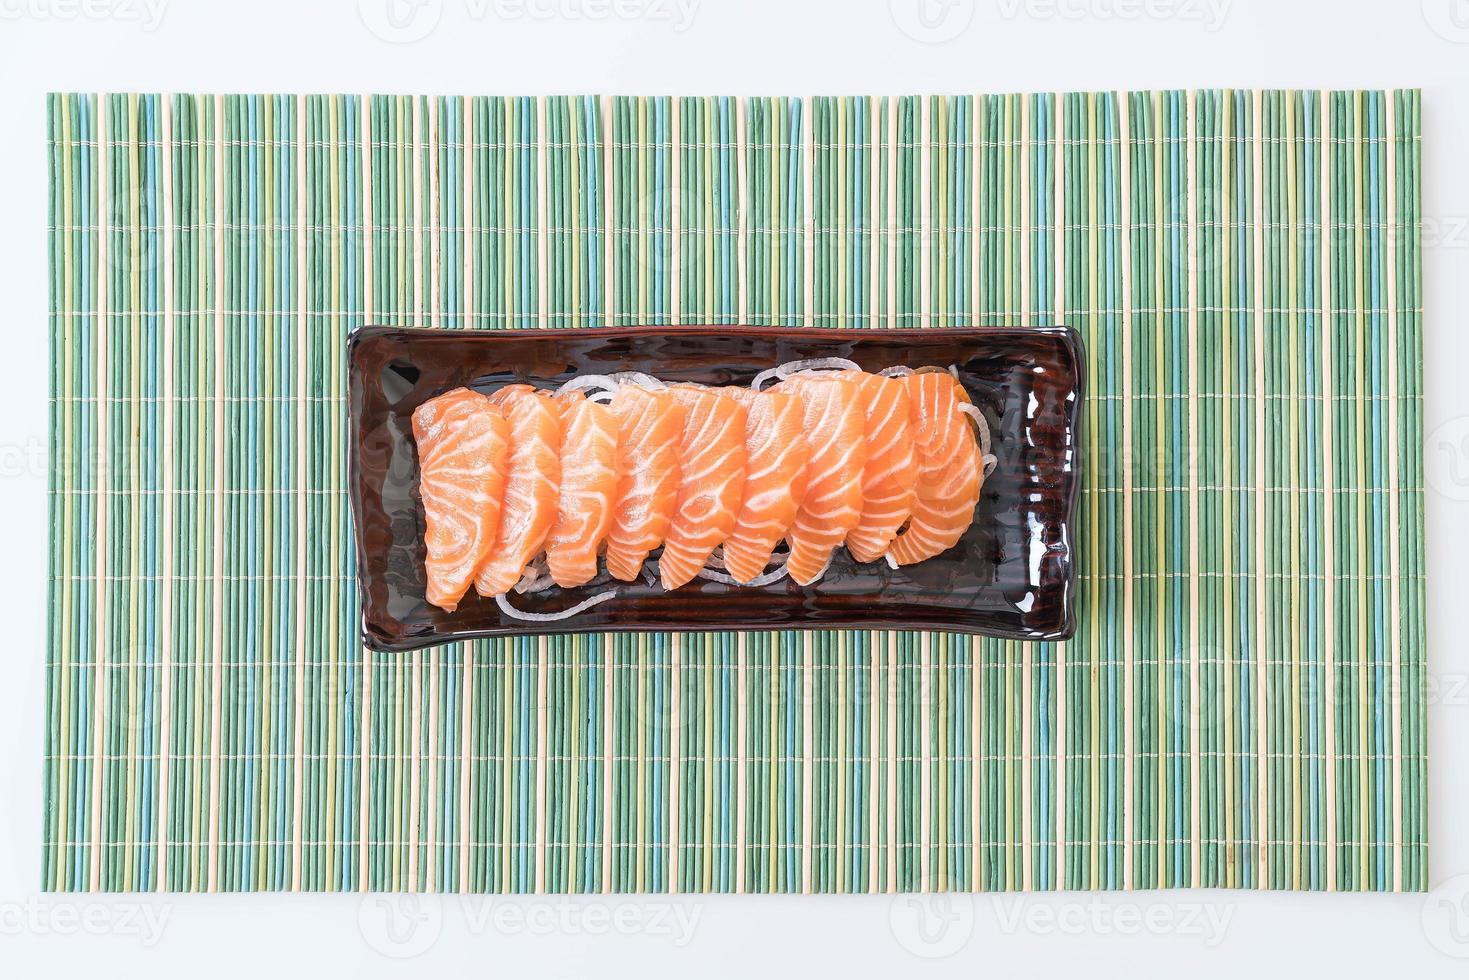 Lachs rohes Sashimi - japanisches Essen foto